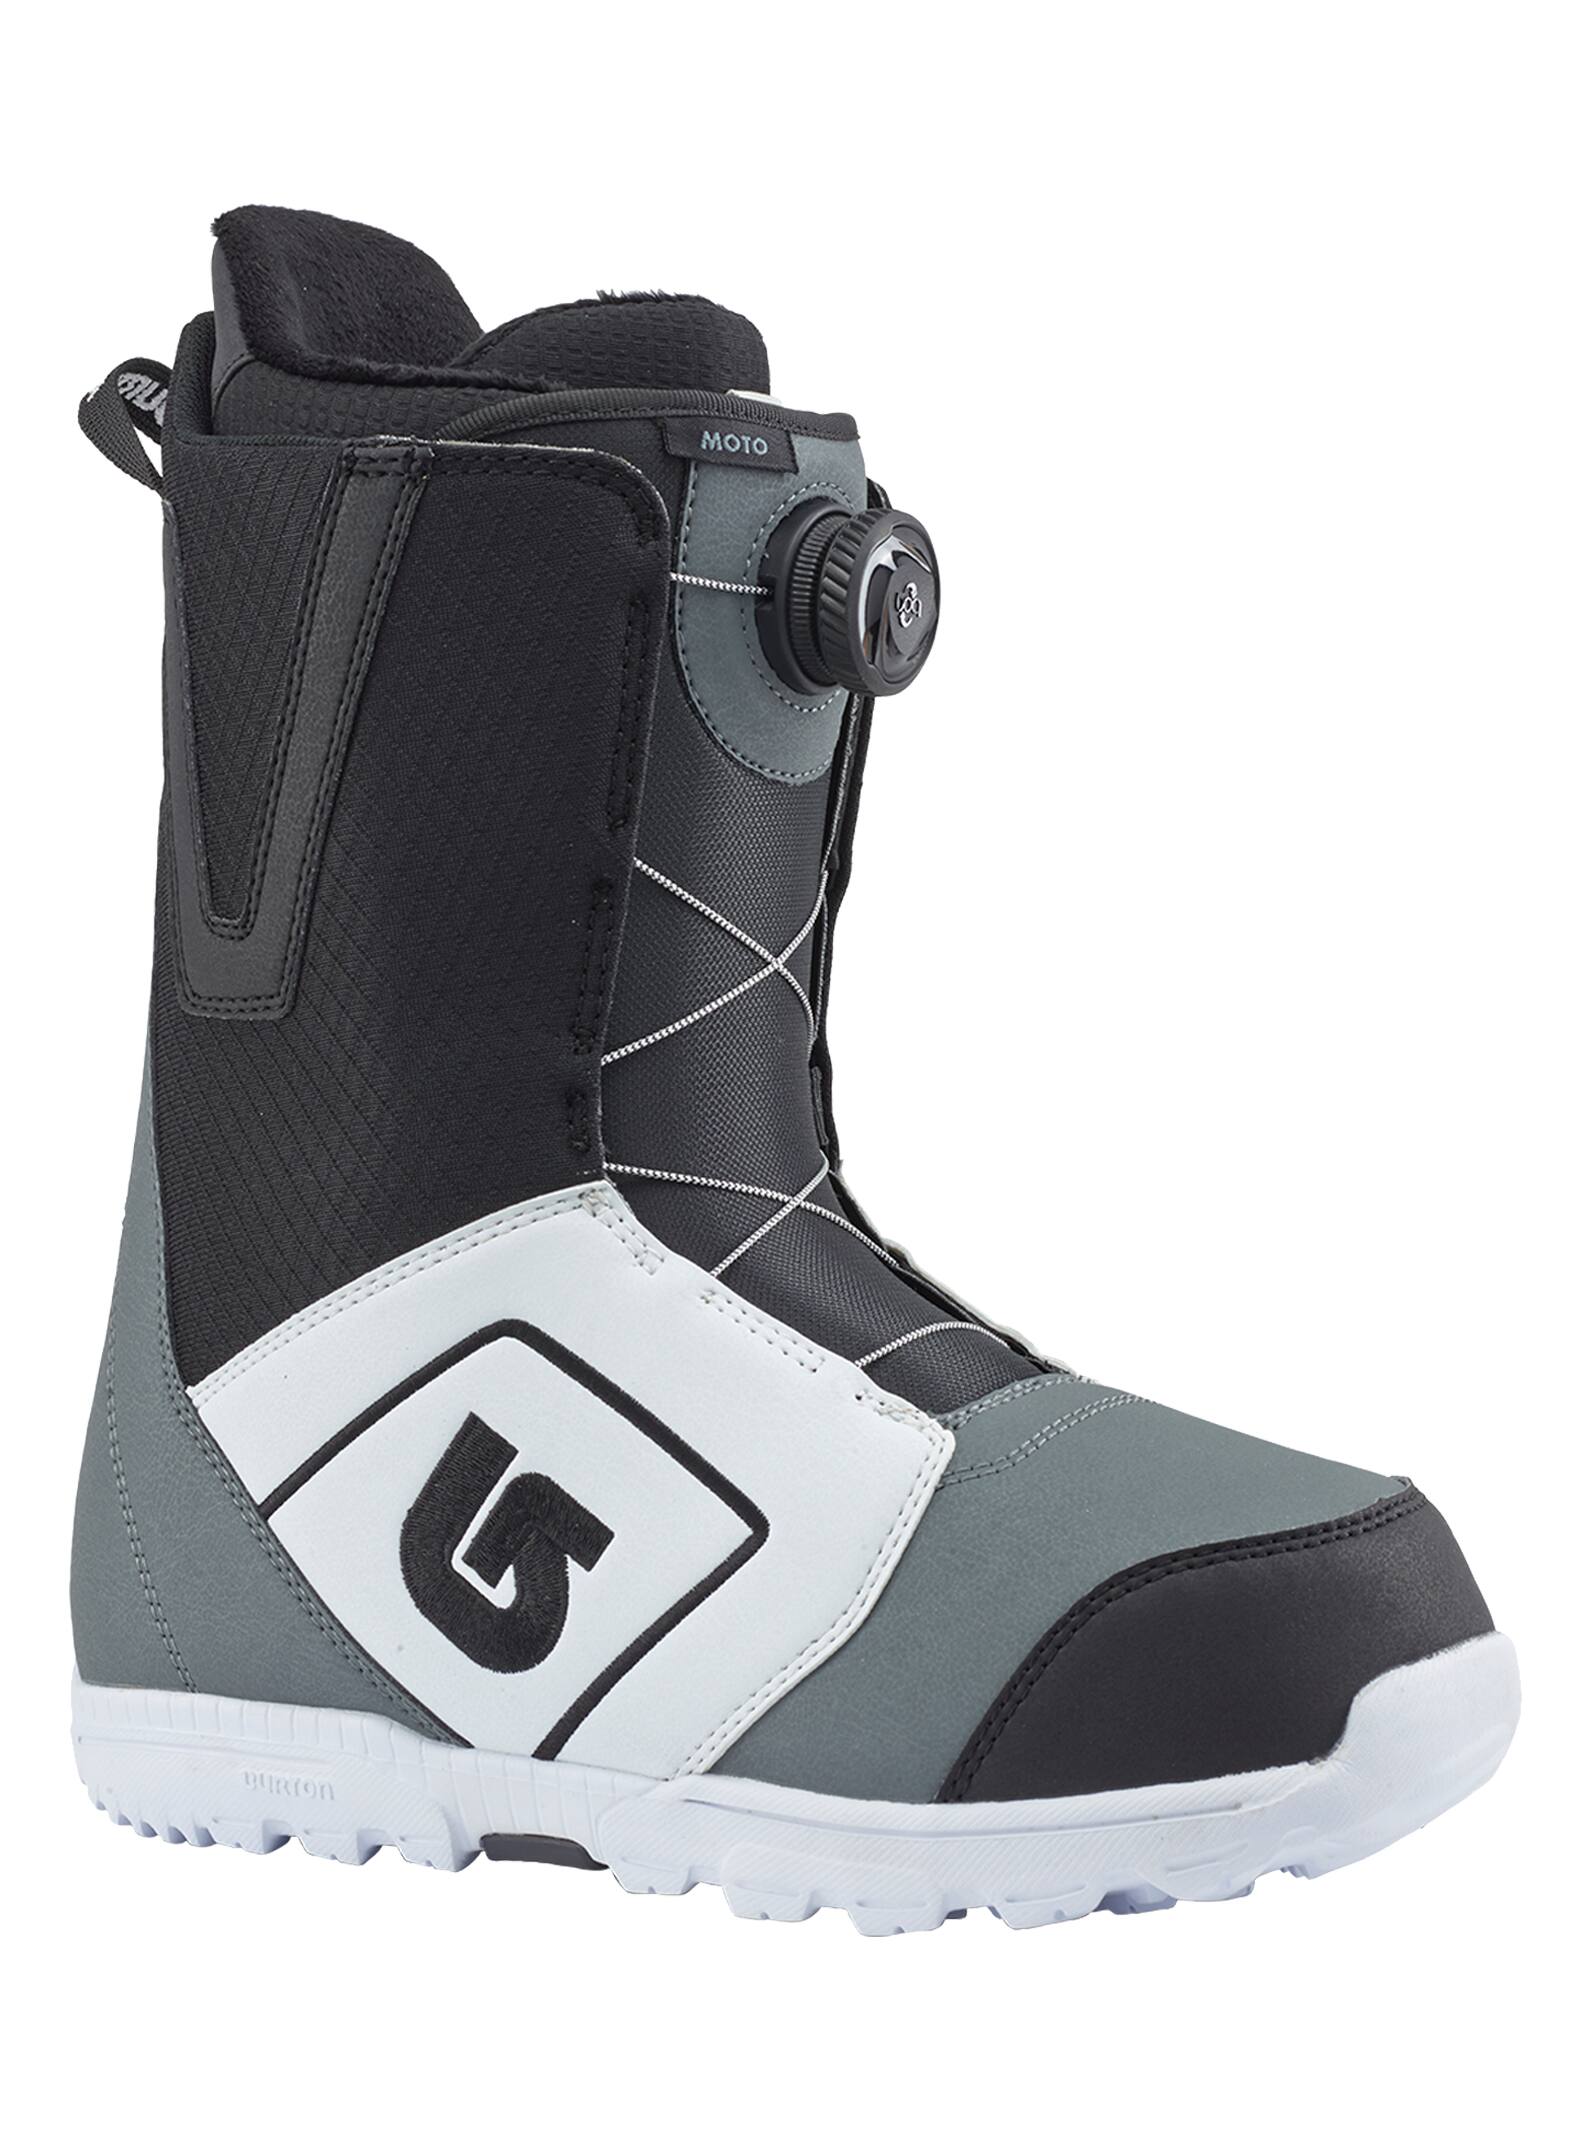 Burton - Boots de snowboard Moto Boa® homme, White / Black / Gray, 10